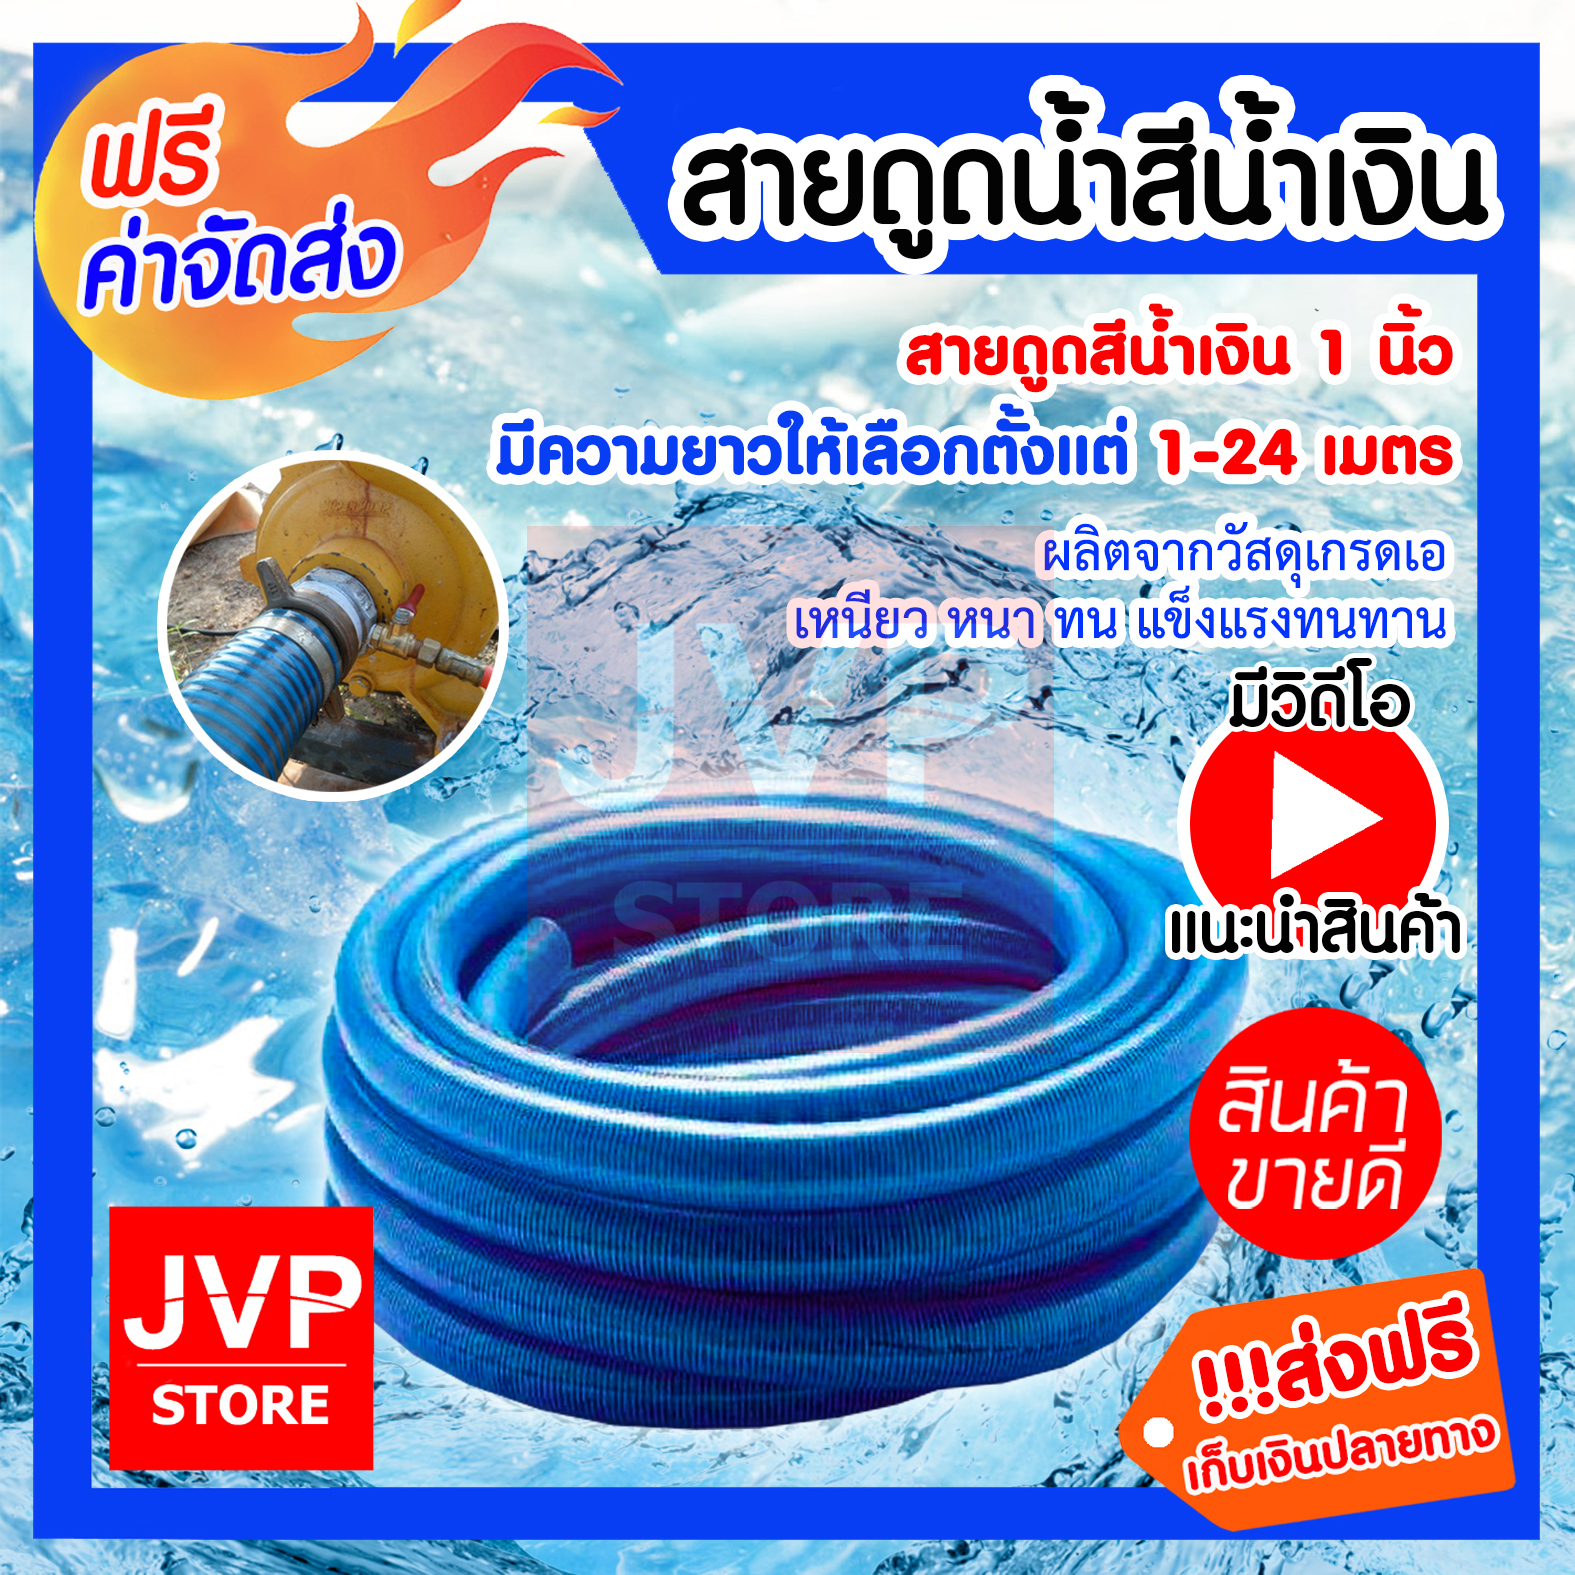 **ส่งฟรี** ท่อดูดน้ำ สีน้ำเงินเข้ม 1 นิ้ว  มีให้เลือกความยาวตั้งแต่ 1-24 เมตร  สายดูดน้ำ พีวีซี (Water pipe)ใช้ดูดน้ำ ส่งน้ำ และ ดูดเม็ดพลาสติก สินค้าคุณภาพจากJVP